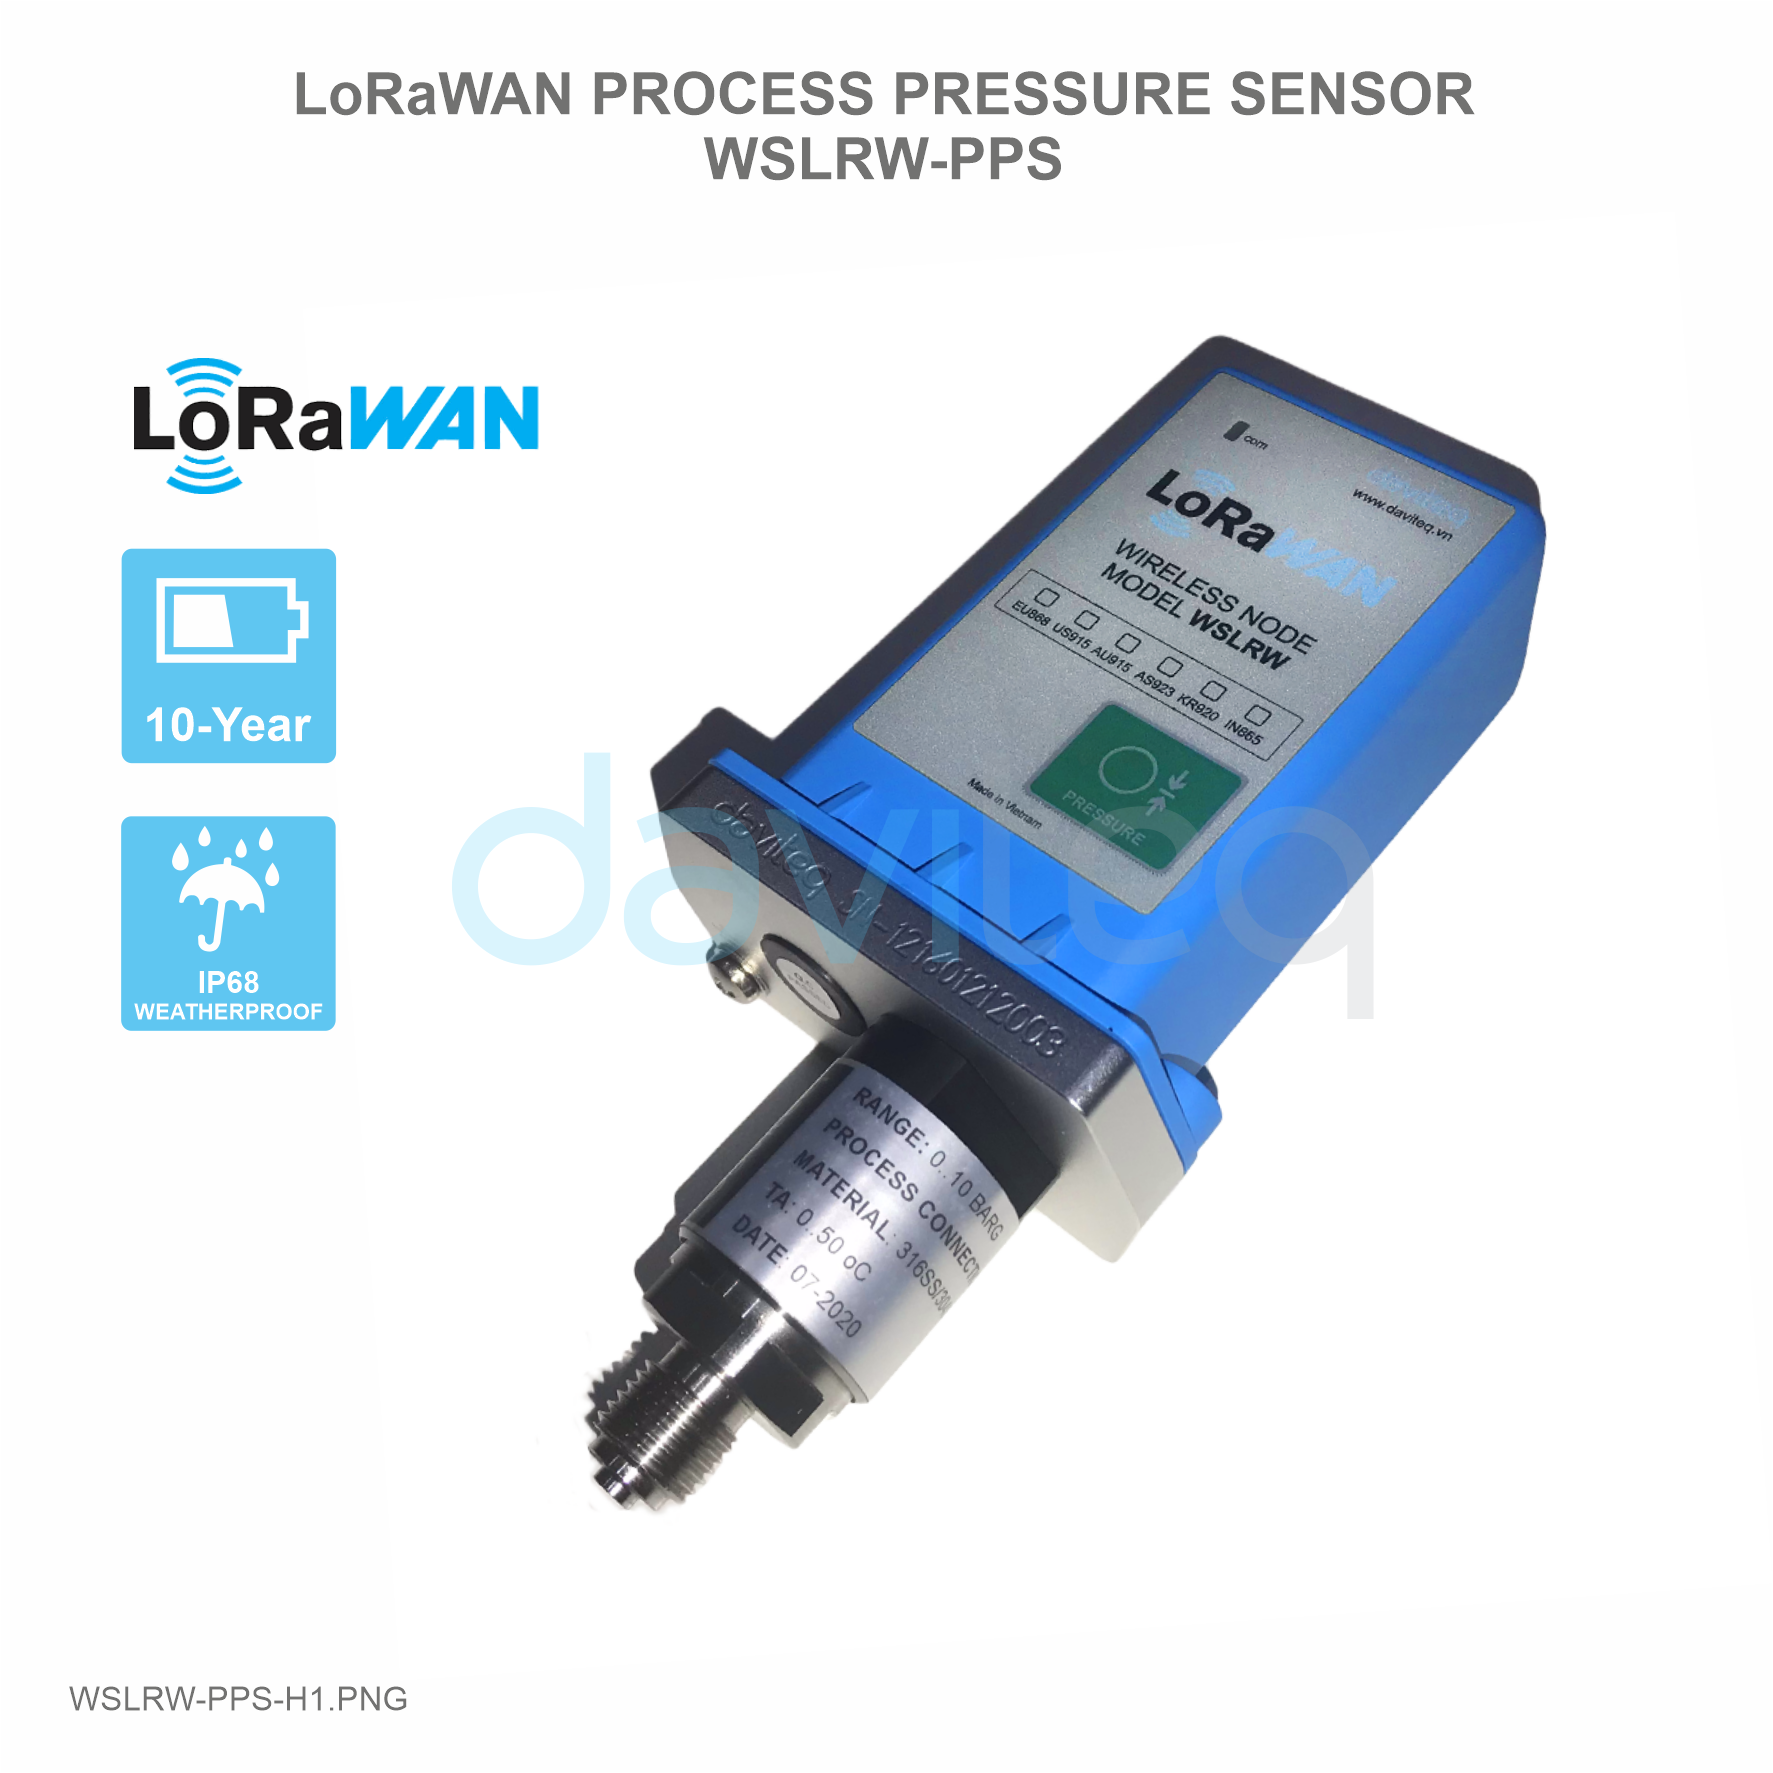 Cảm biến LoRaWAN đo áp suất Process